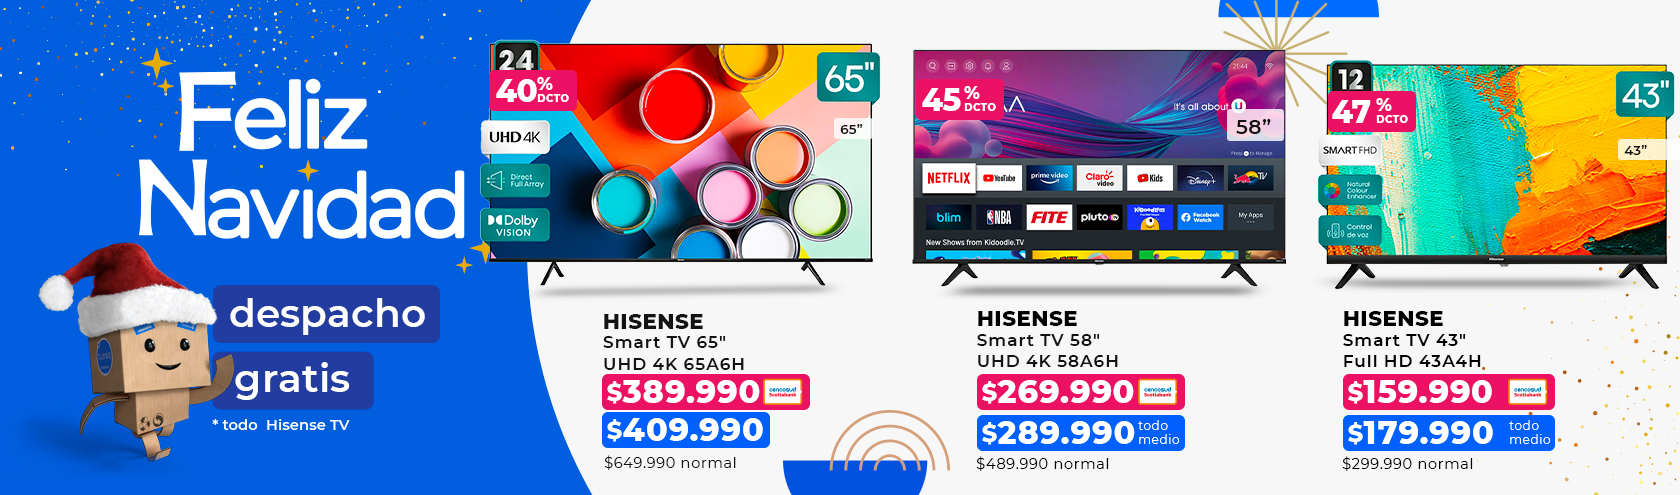 Ofertas en Smart TV de 65, 58 y 43 pulgadas marca Hisense en Paris.cl